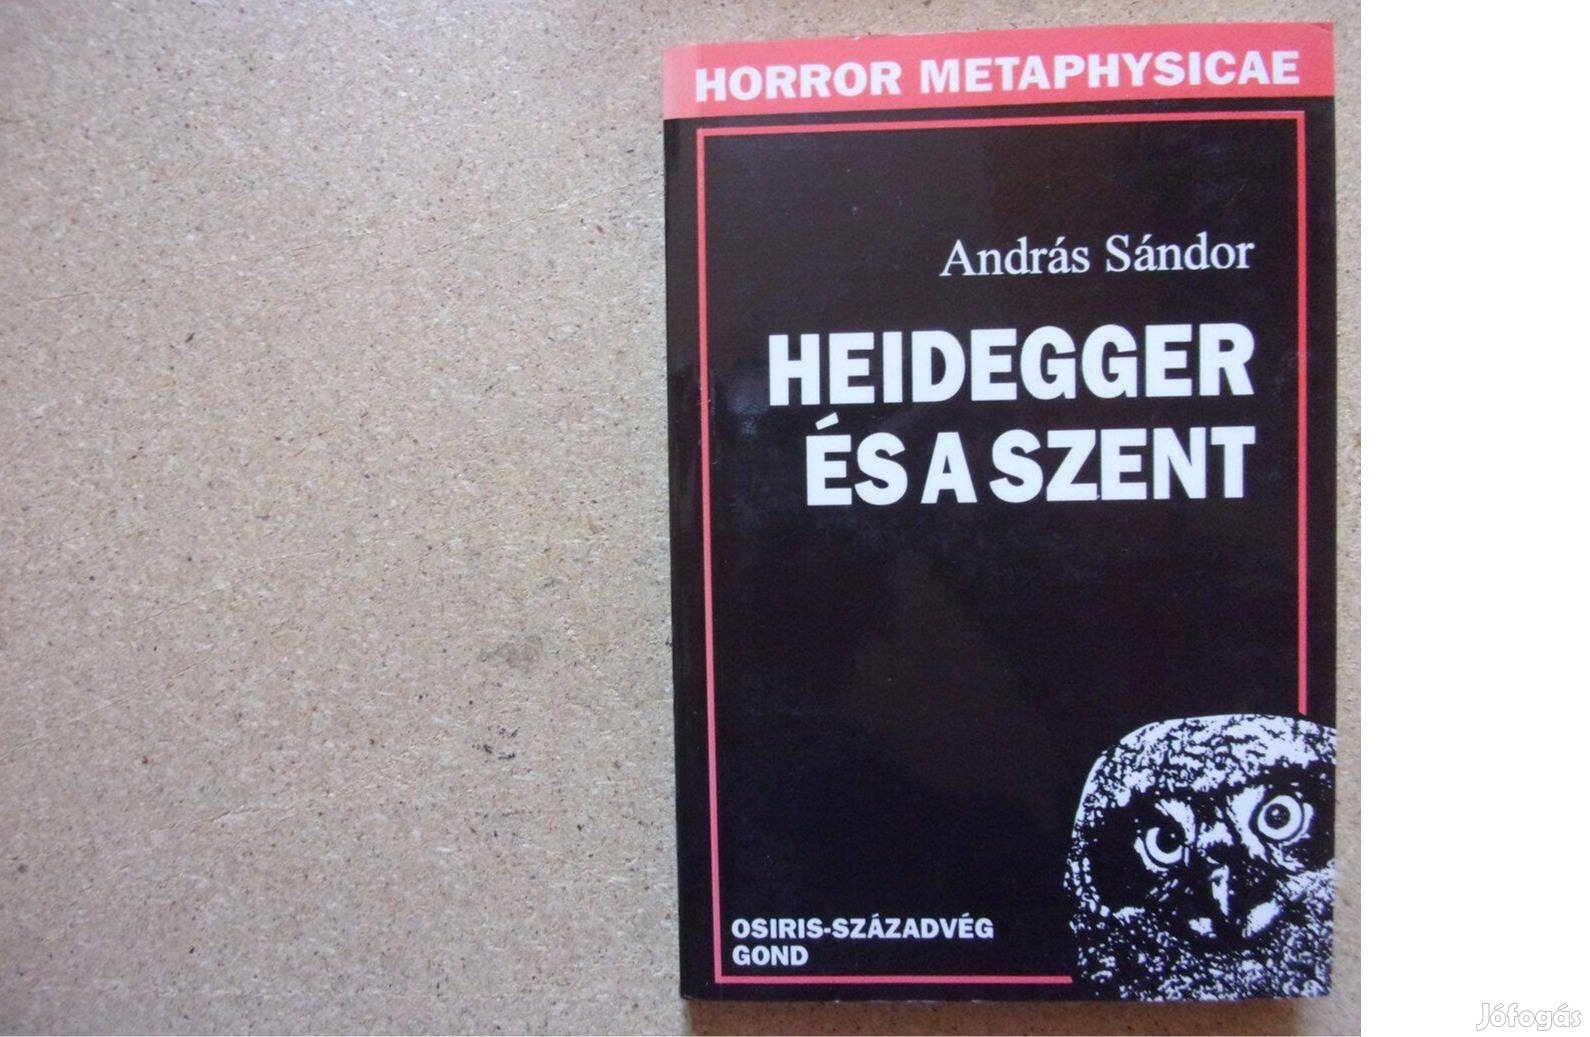 András Sándor Heidegger és a szent Horror metaphysicae